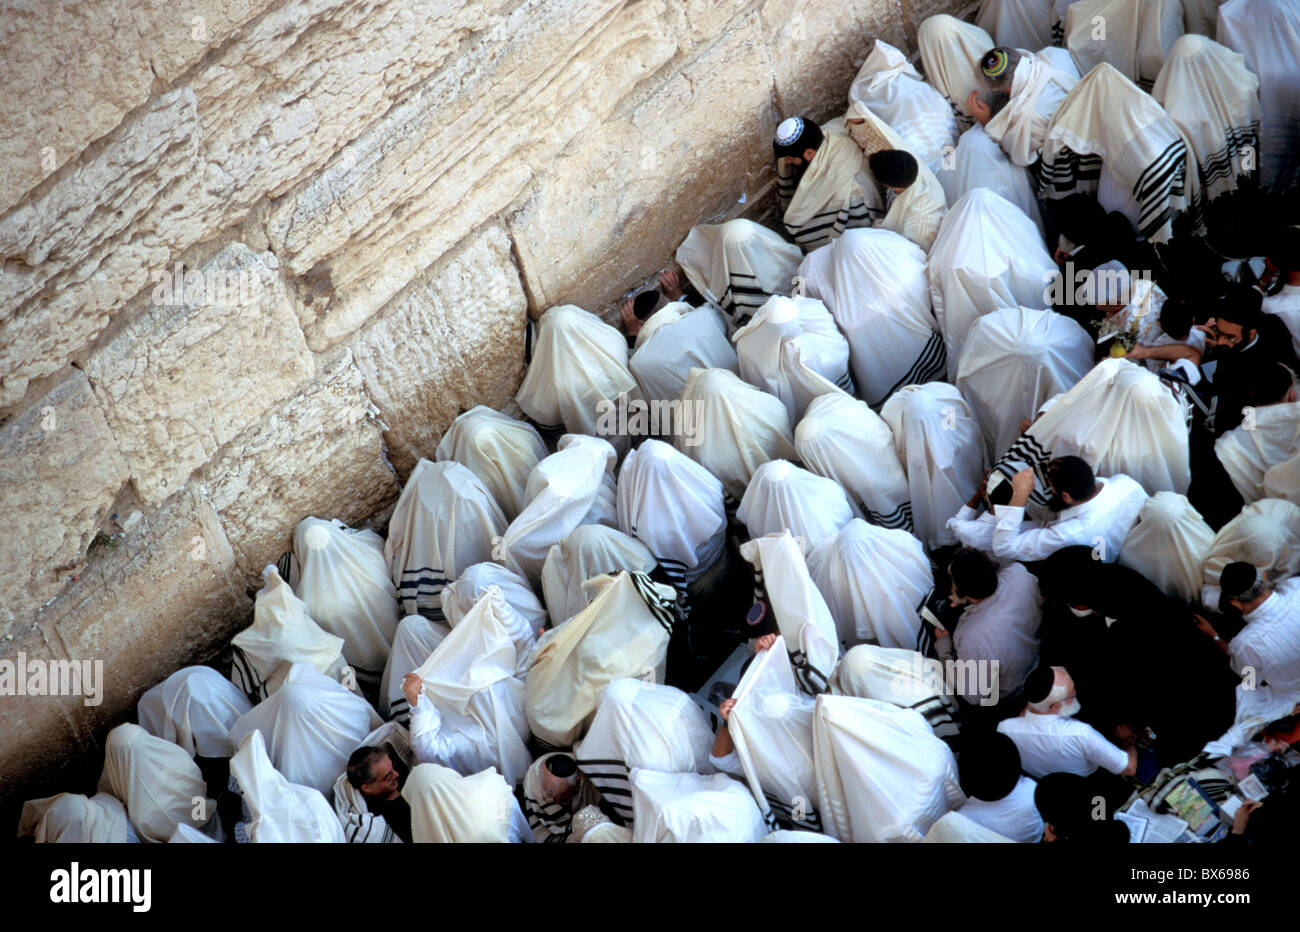 La cérémonie de bénédiction sacerdotale par le Mur occidental à Souccot, vieille ville, Jérusalem, Israël, Moyen Orient Banque D'Images